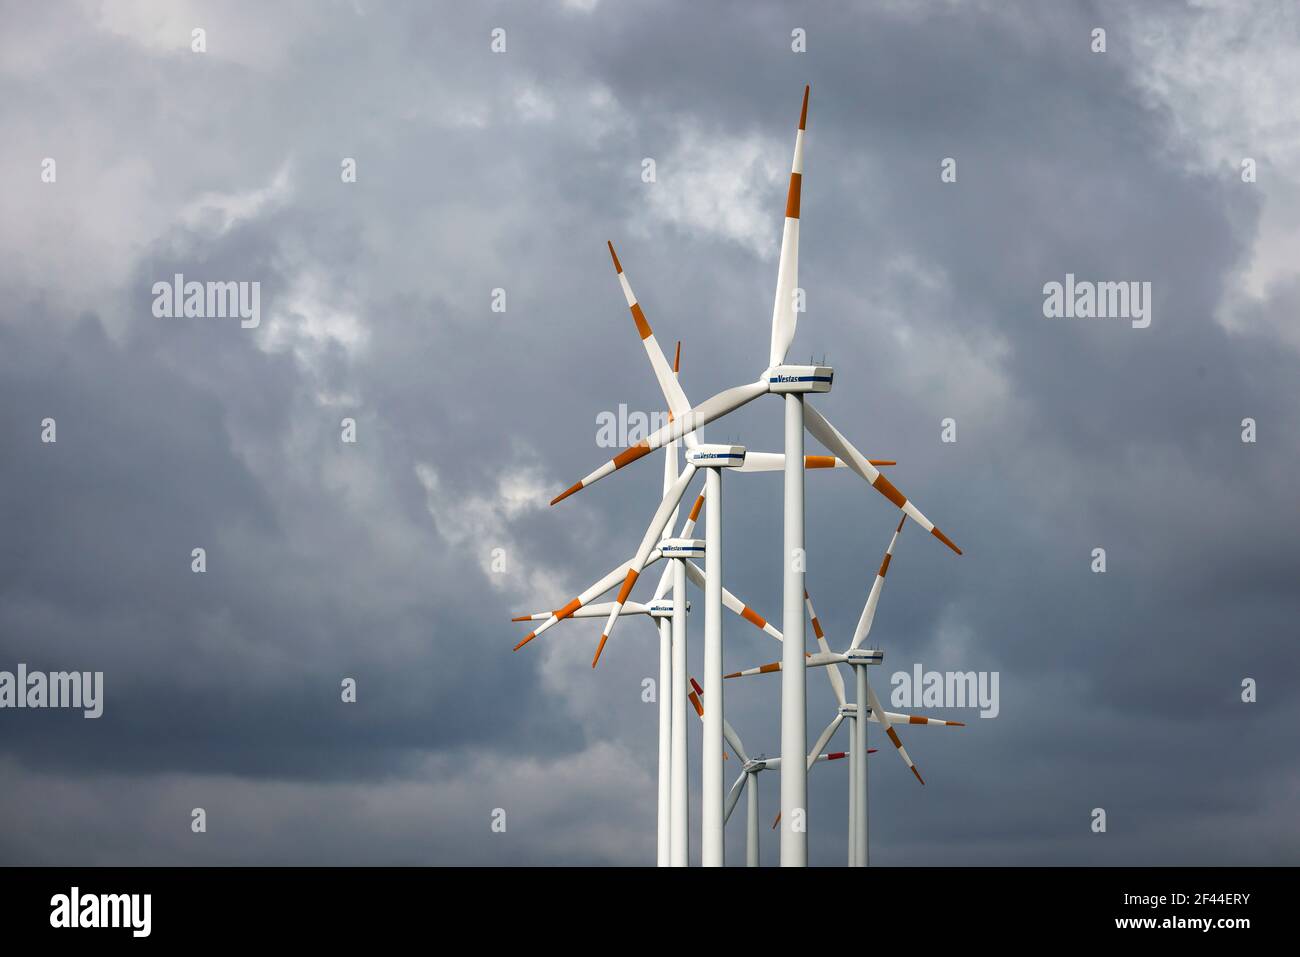 Bedburg, Nordrhein-Westfalen, Deutschland - Windpark, Vestas Windturbinen gegen dunklen bewölkten Himmel. Stockfoto